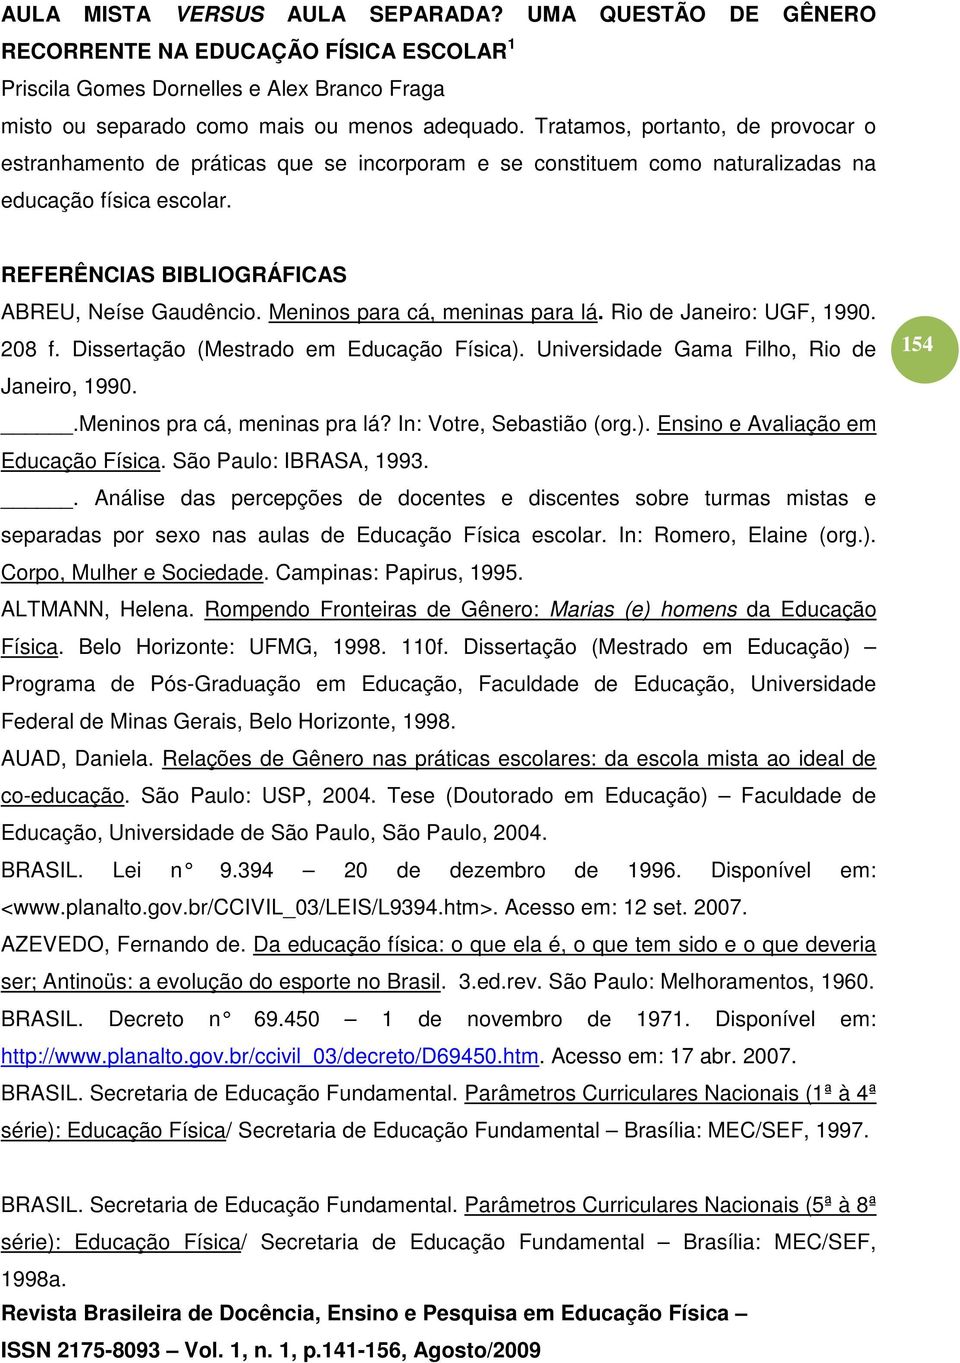 Universidade Gama Filho, Rio de Janeiro, 1990..Meninos pra cá, meninas pra lá? In: Votre, Sebastião (org.). Ensino e Avaliação em Educação Física. São Paulo: IBRASA, 1993.